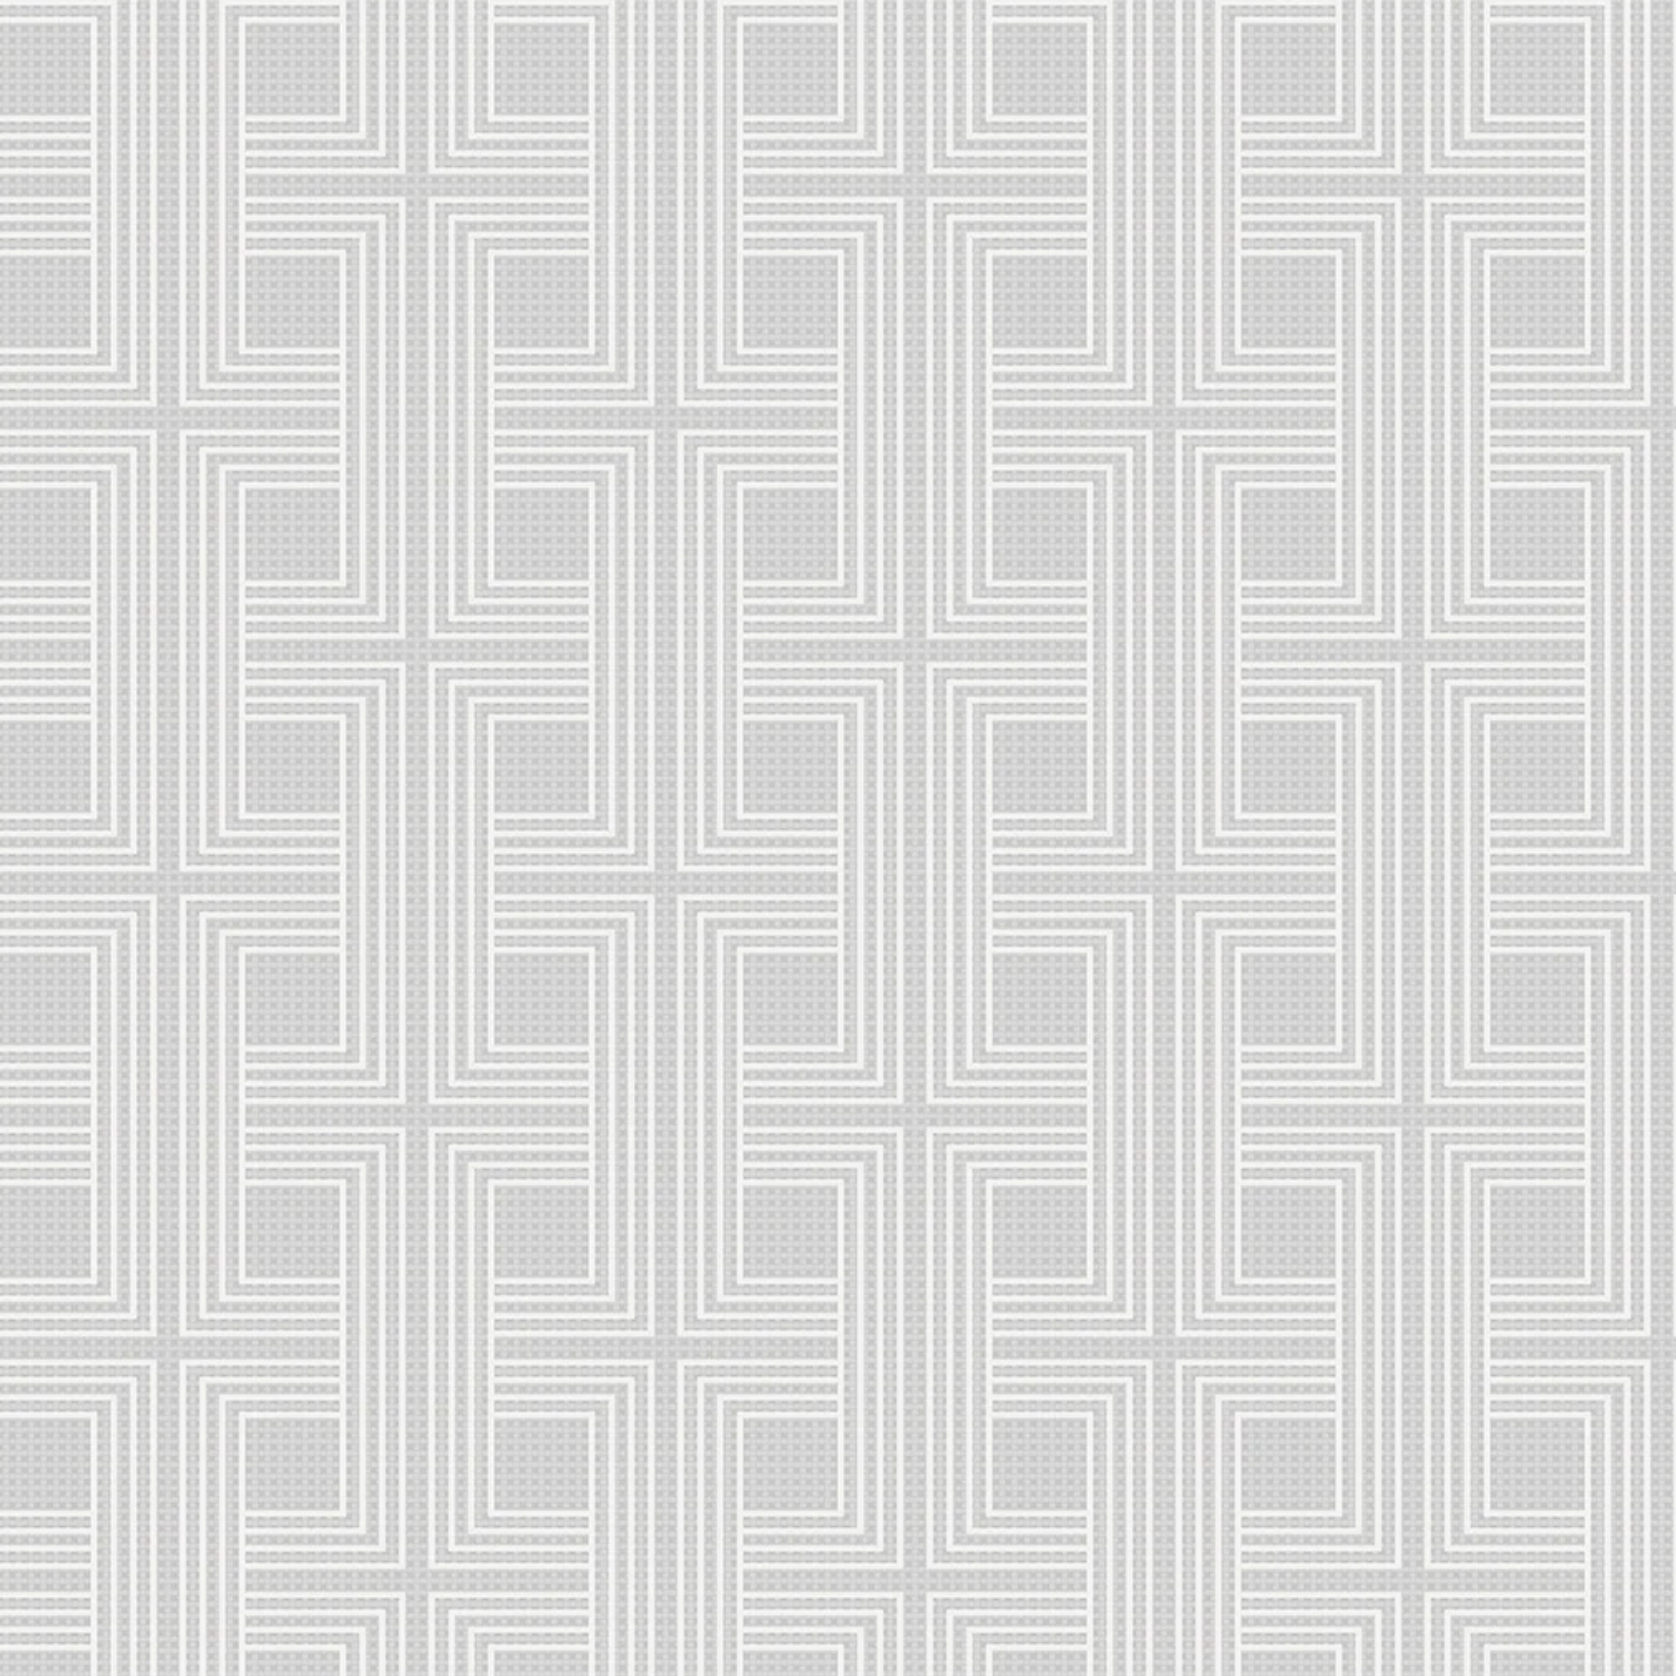 AW71600 | Interlocking Squares, Grey - Seabrook Designs Wallpaper